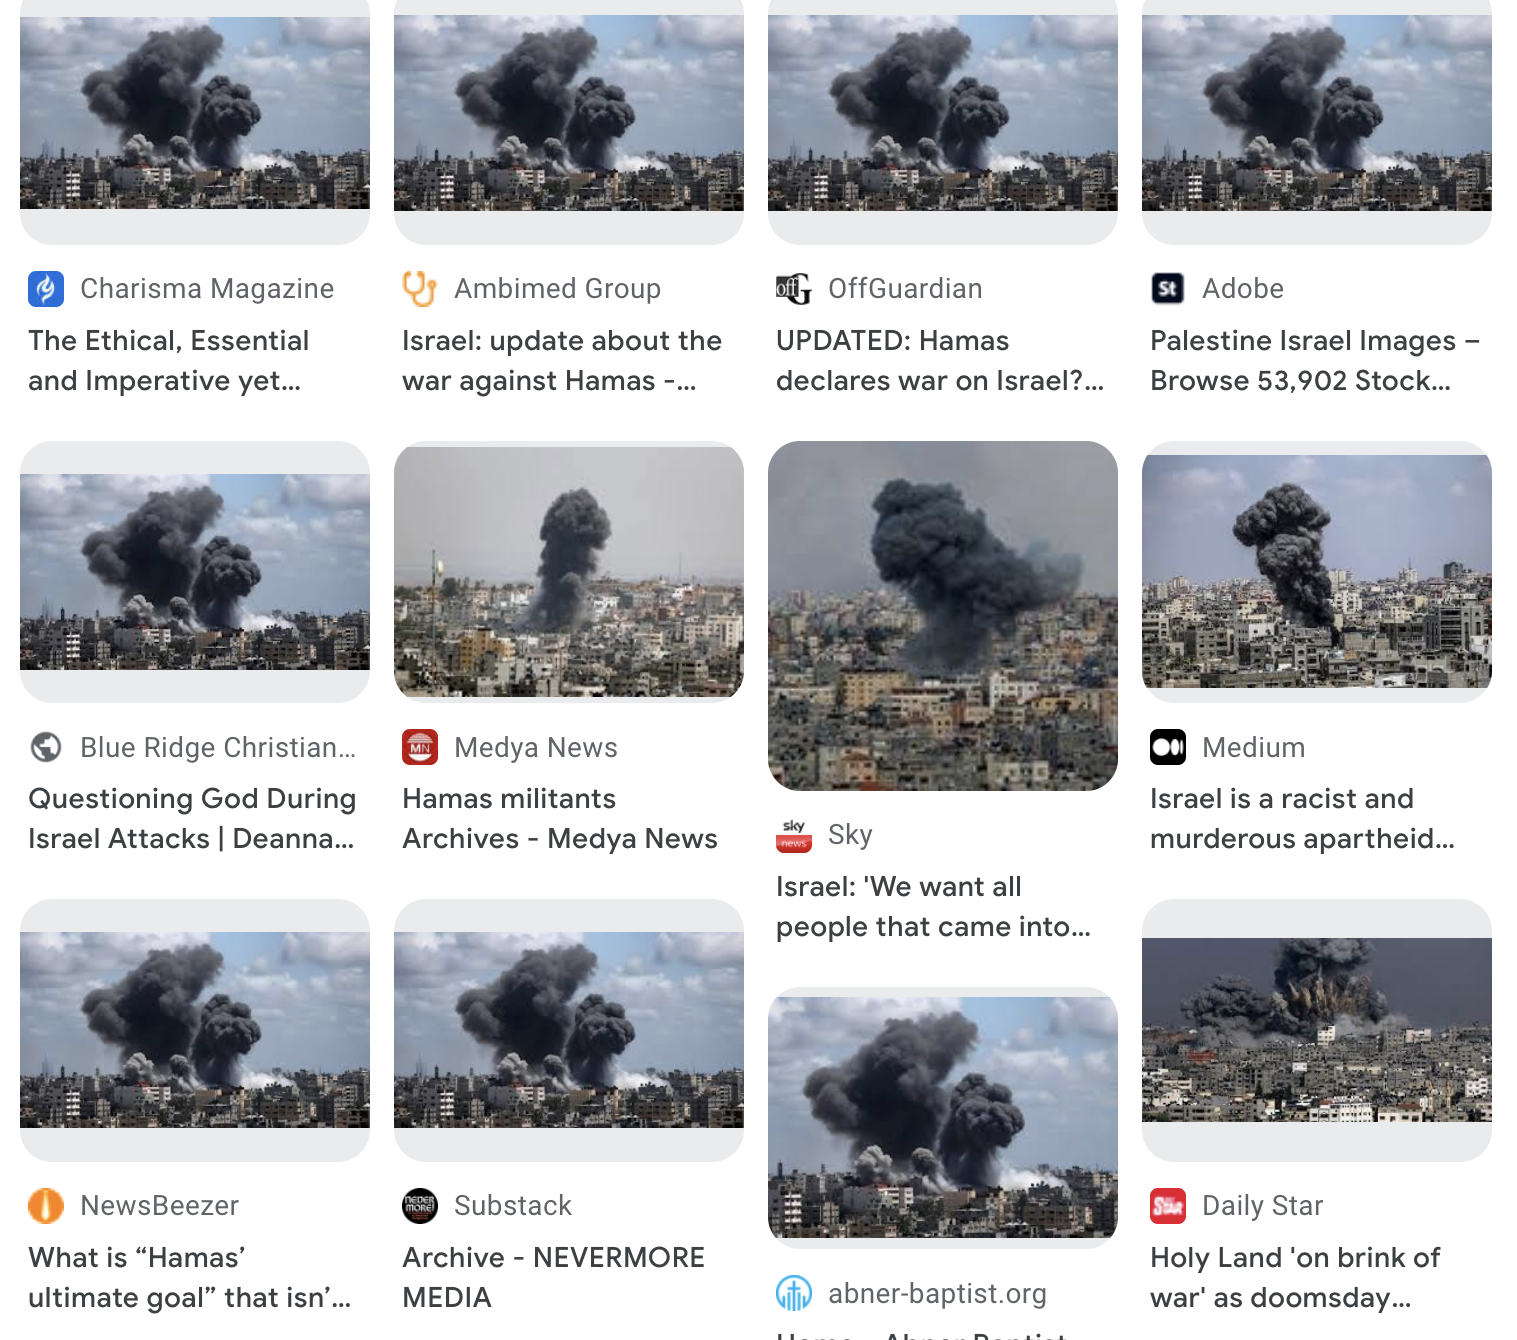 Adobe продает сгенерированные искусственным интеллектом изображения войны Израиля и ХАМАСа, которые в новостях выдают за настоящие-3